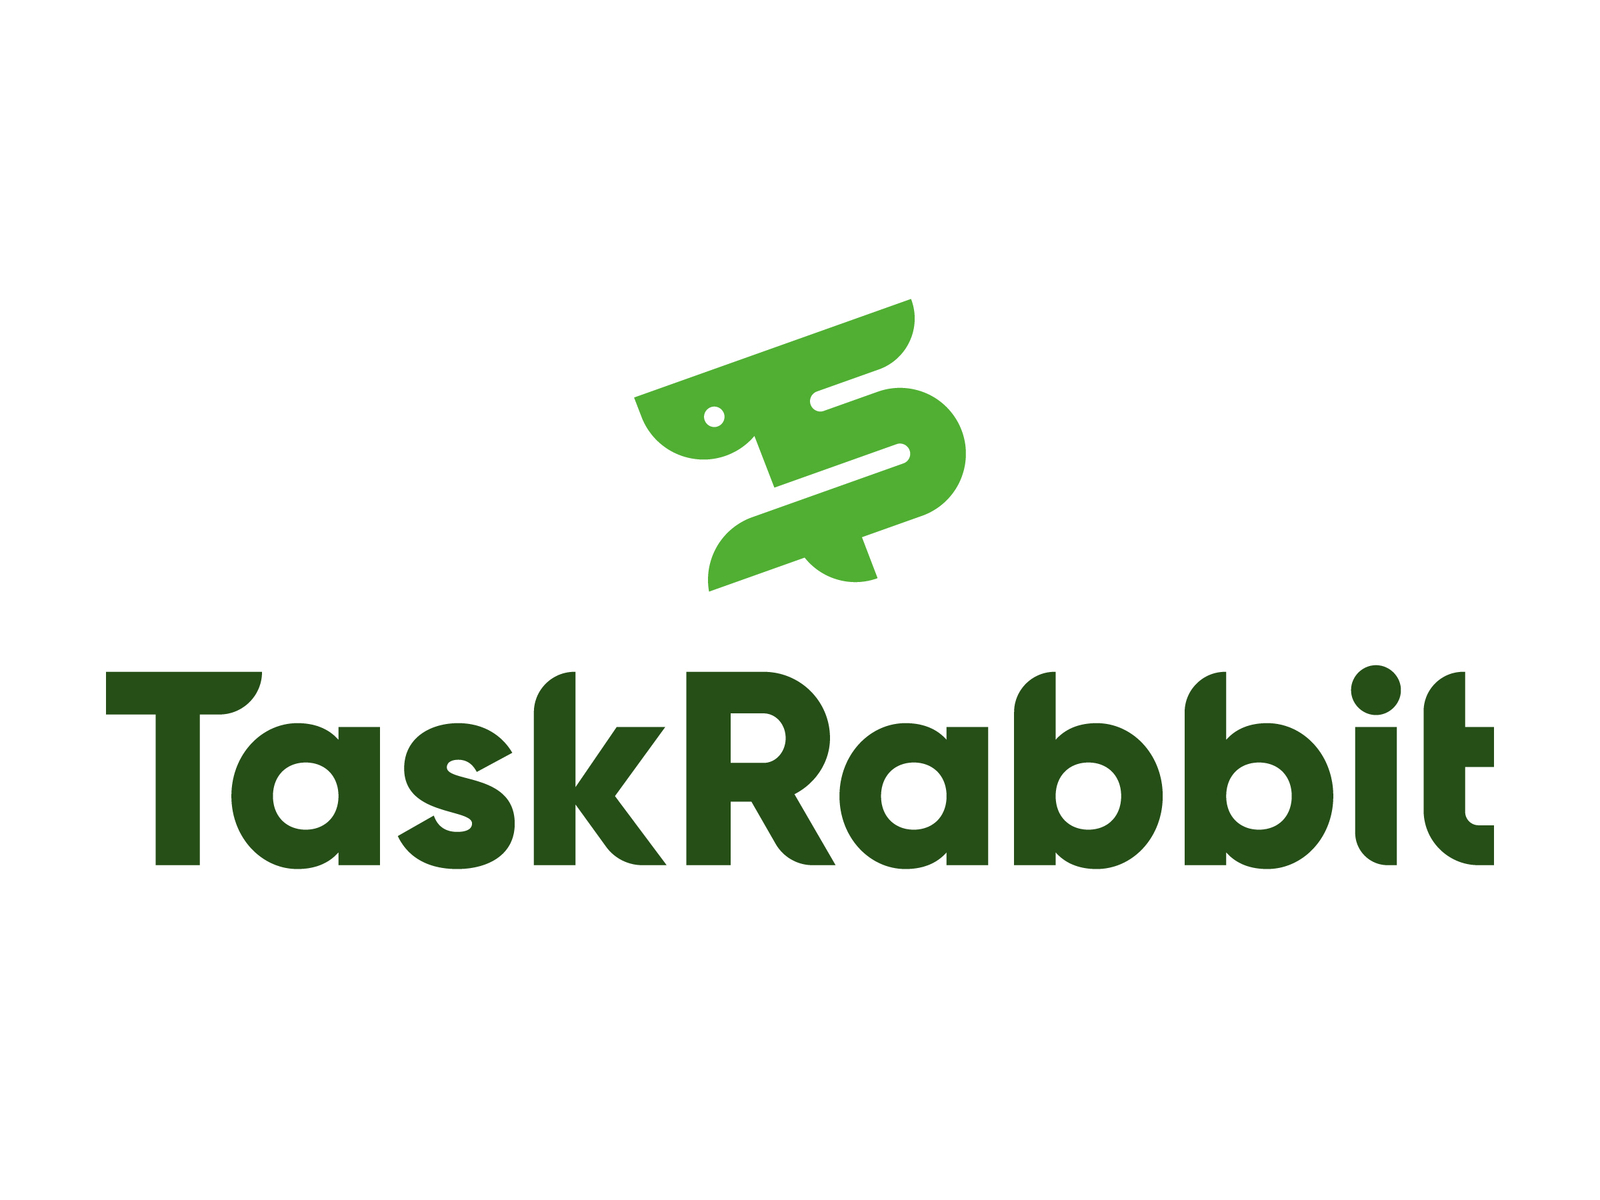 Taskrabbit Assembly